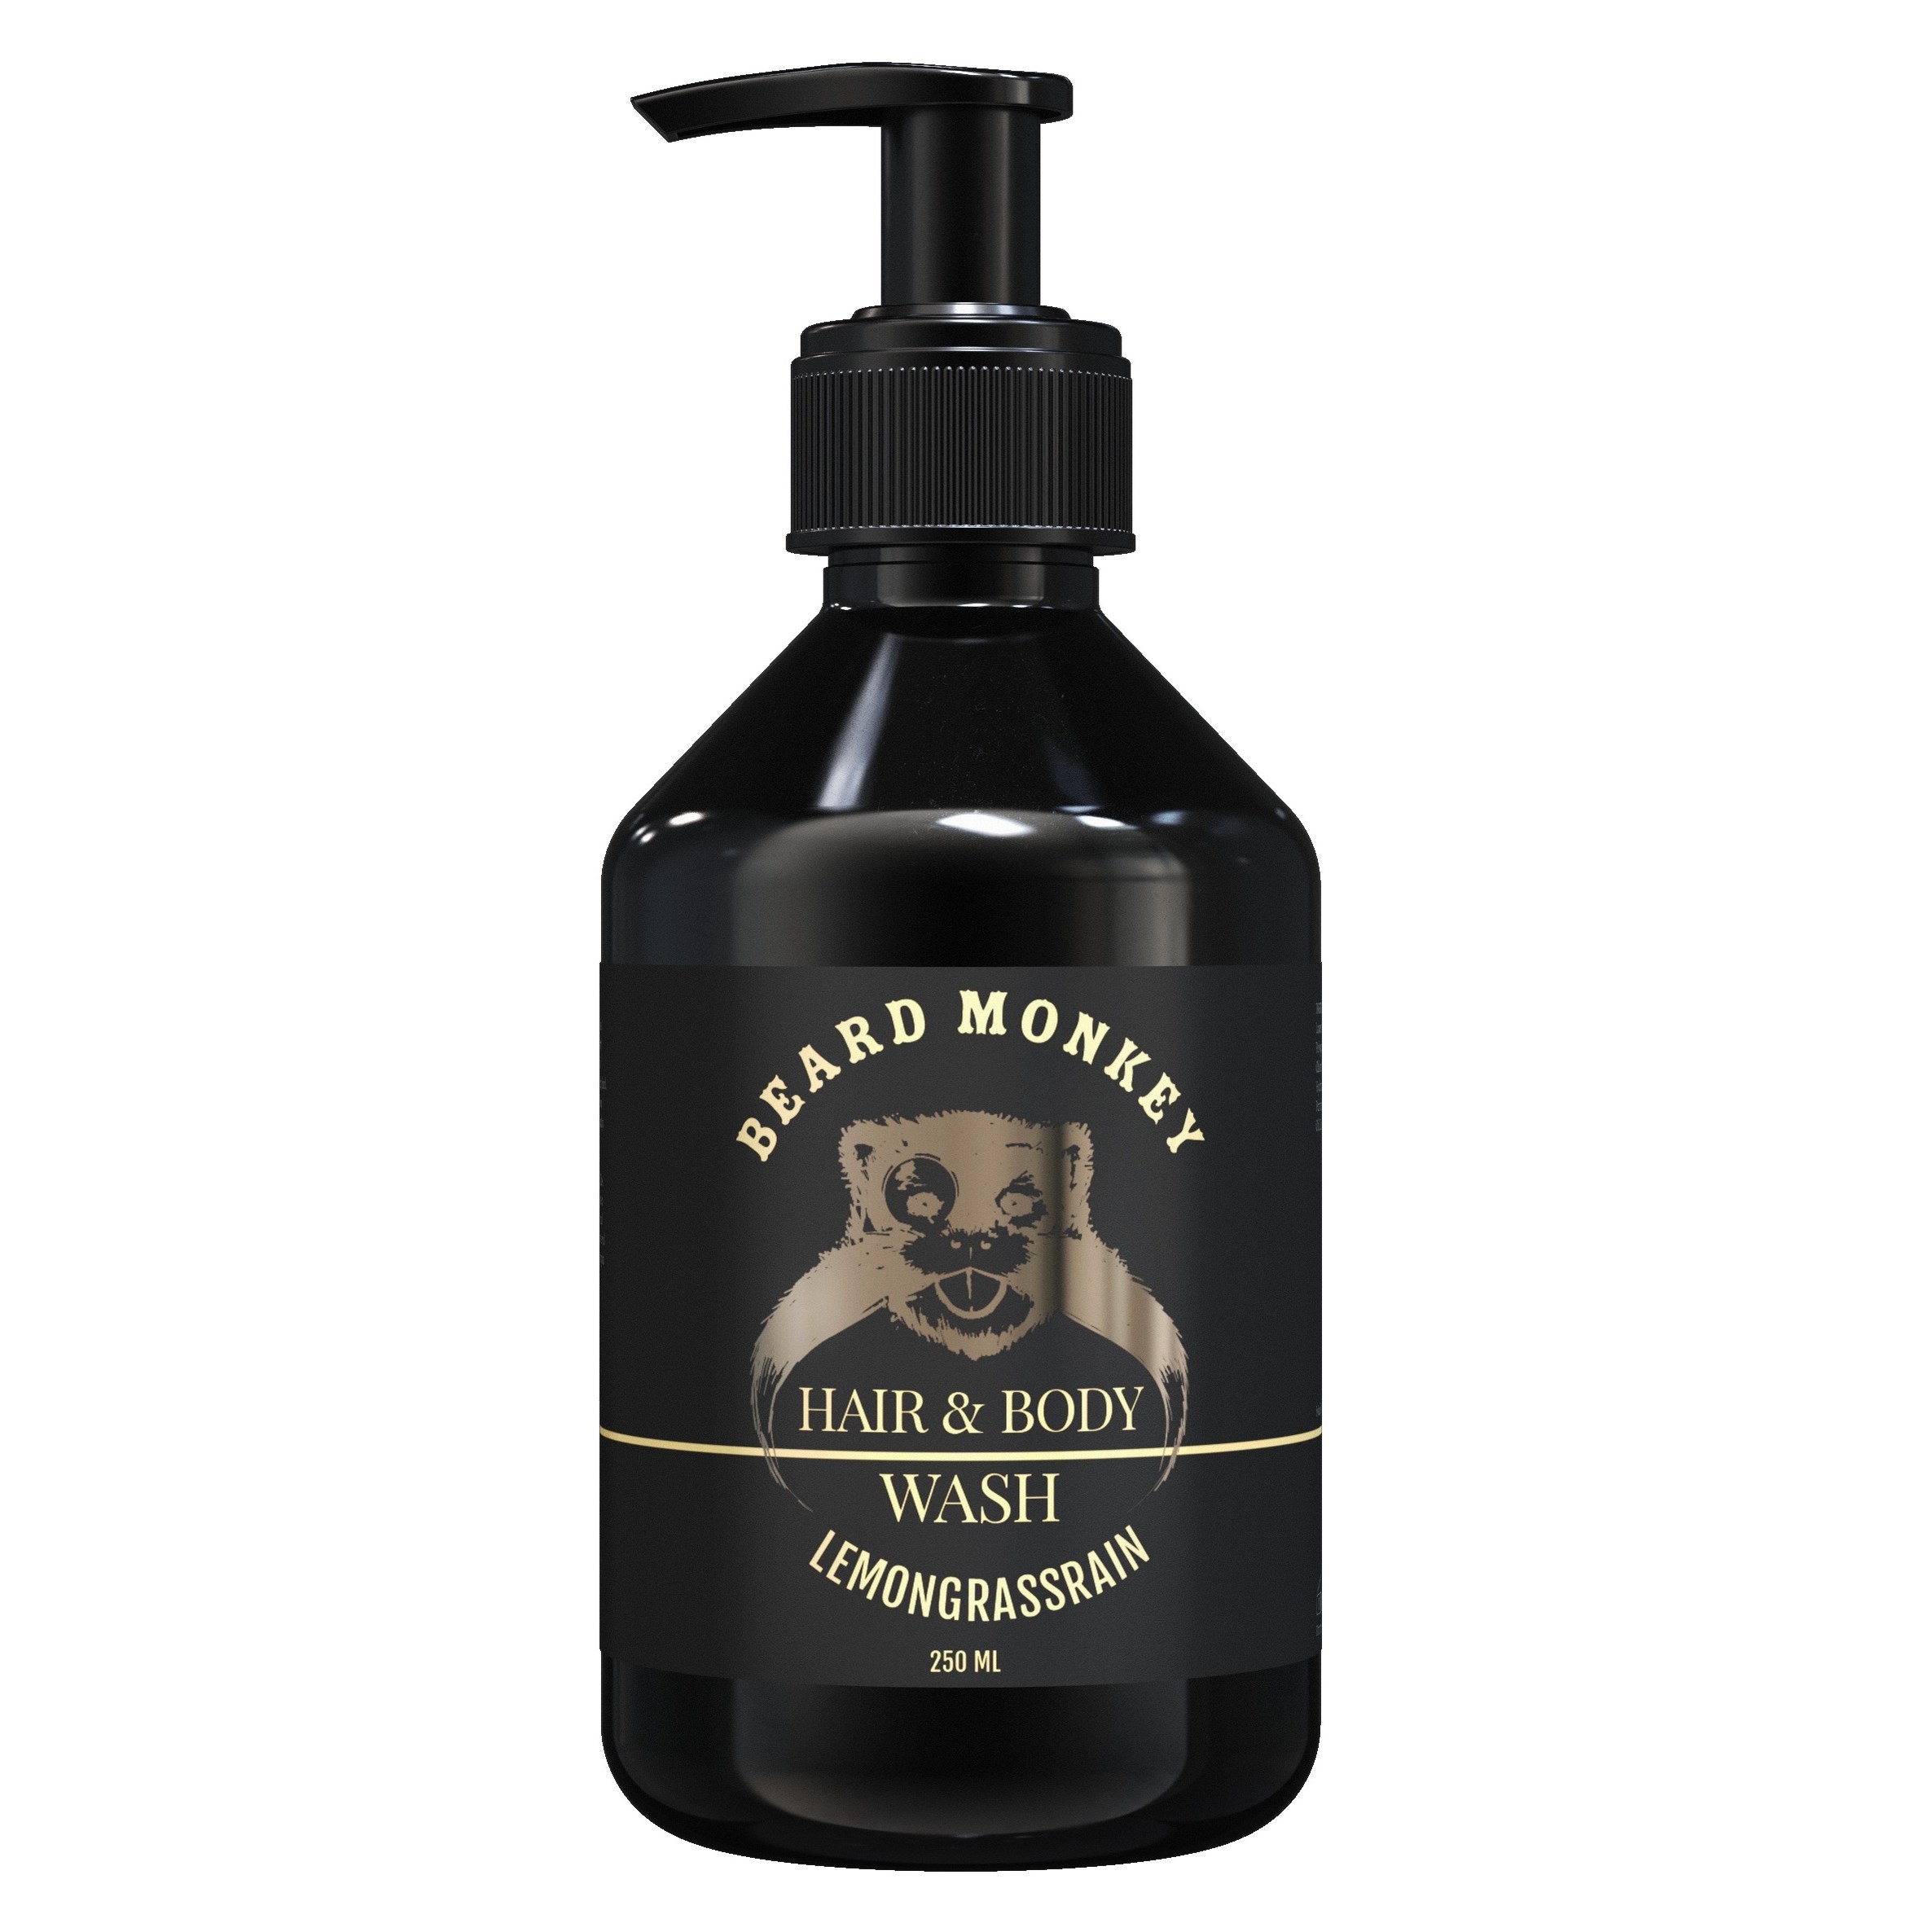 Bilde av Beard Monkey Hair & Body Shampoo Lemongrass 250 Ml